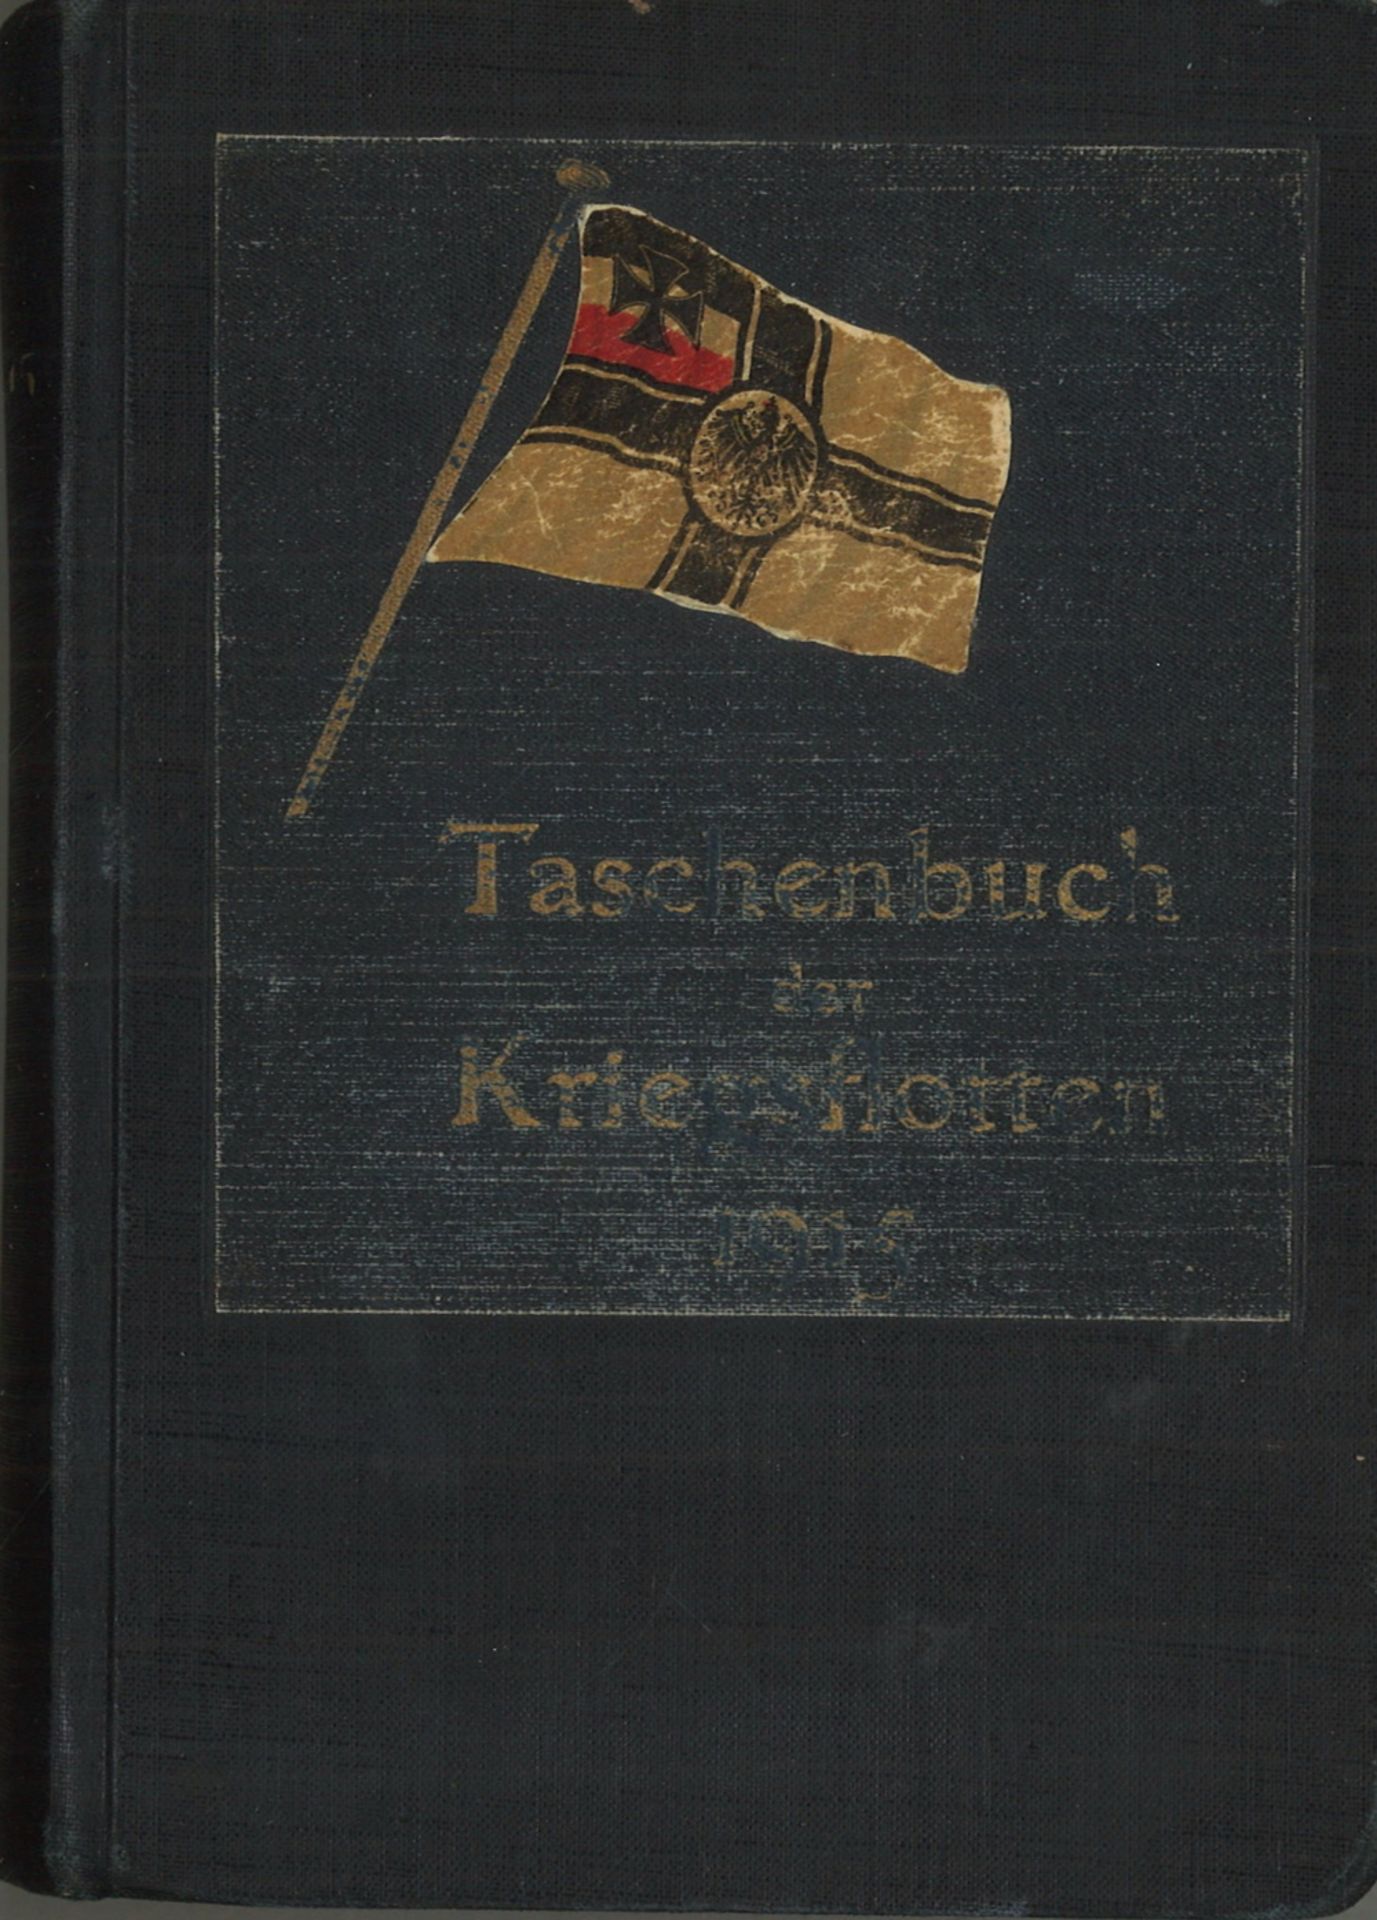 Taschenbuch der Kriegsflotten 1916. Titel berieben, sonst guter Zustand.